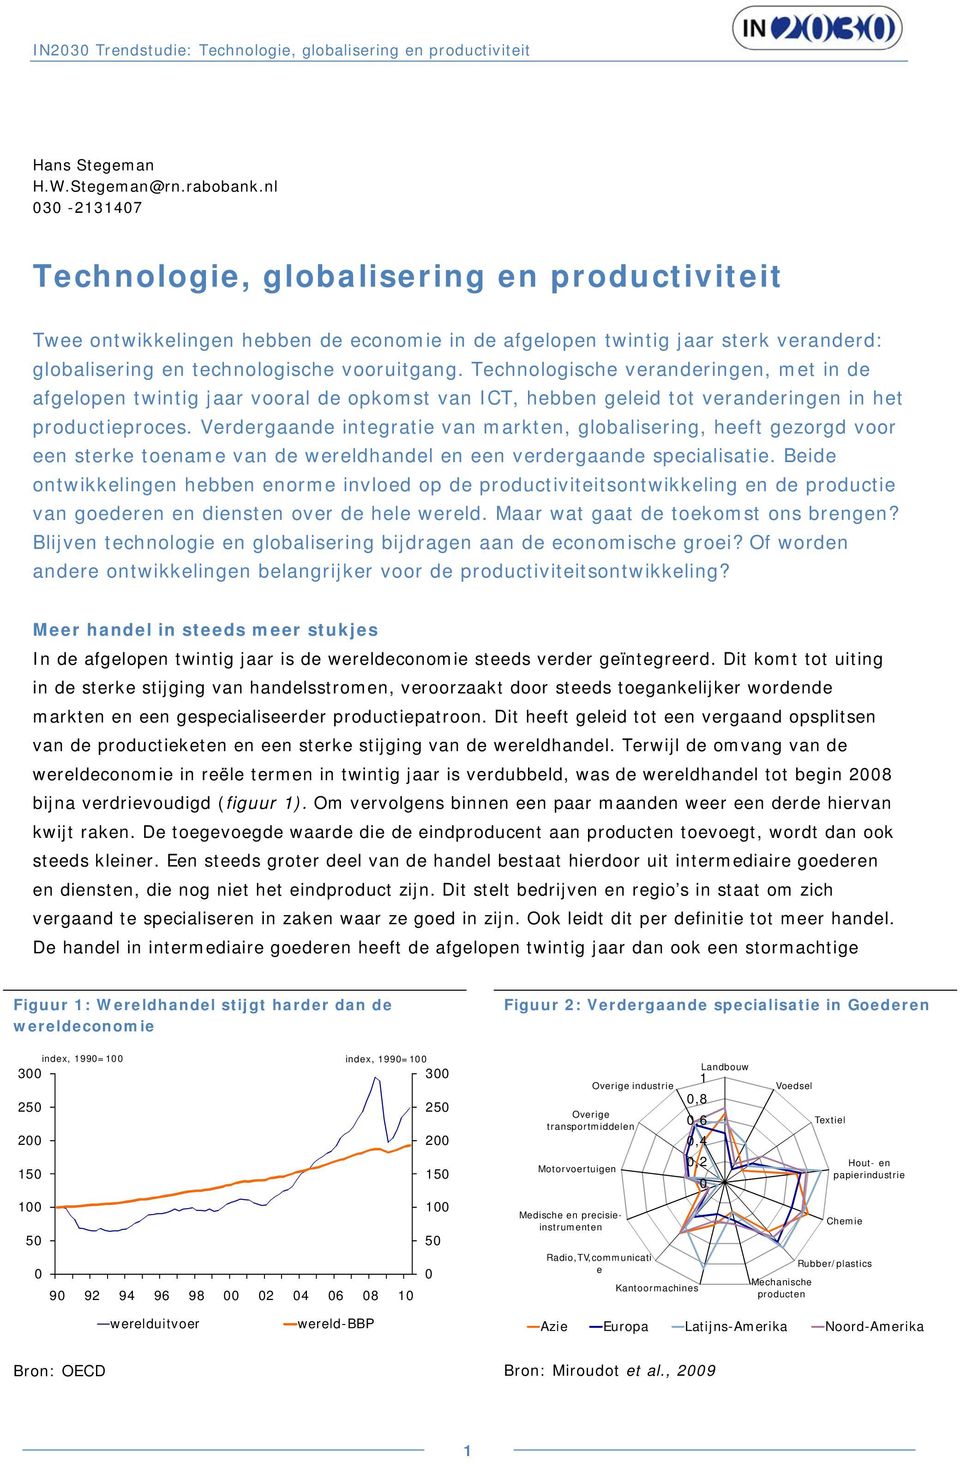 Technologische veranderingen, met in de afgelopen twintig jaar vooral de opkomst van ICT, hebben geleid tot veranderingen in het productieproces.